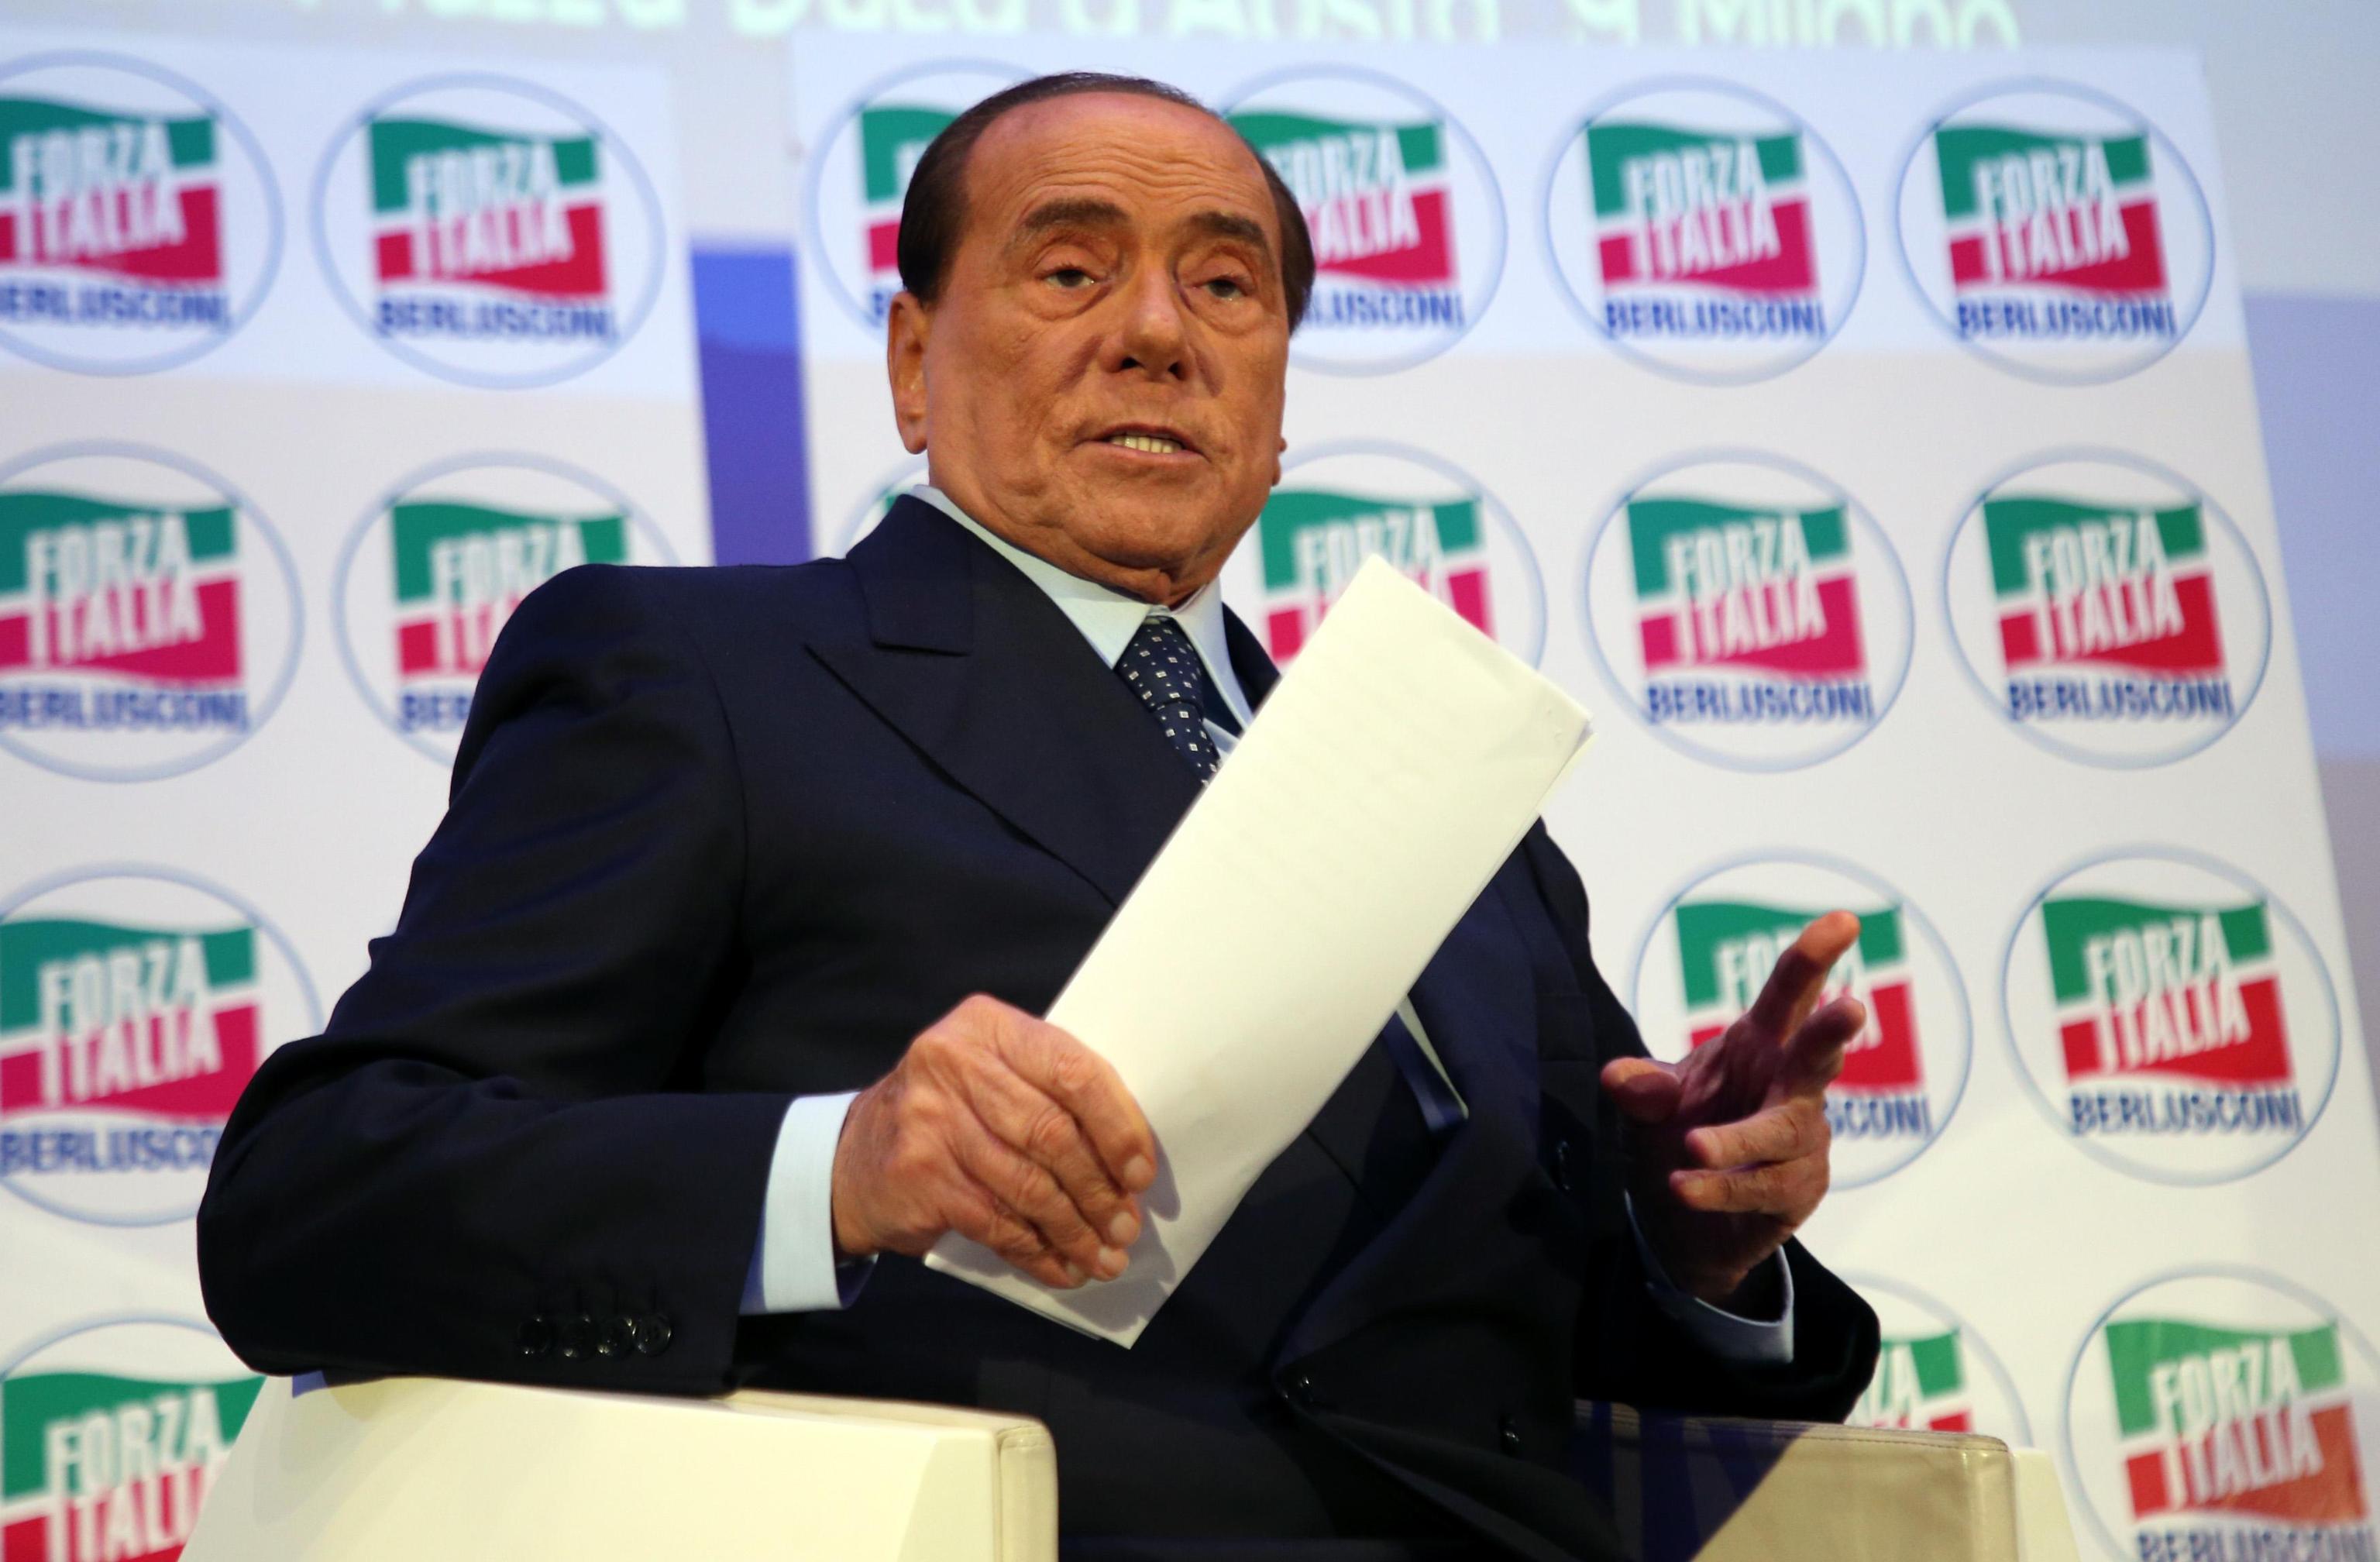 La Corte europea dei diritti umani ha chiuso il caso del ricorso di Silvio Berlusconi contro la legge Severino, senza emettere una sentenza